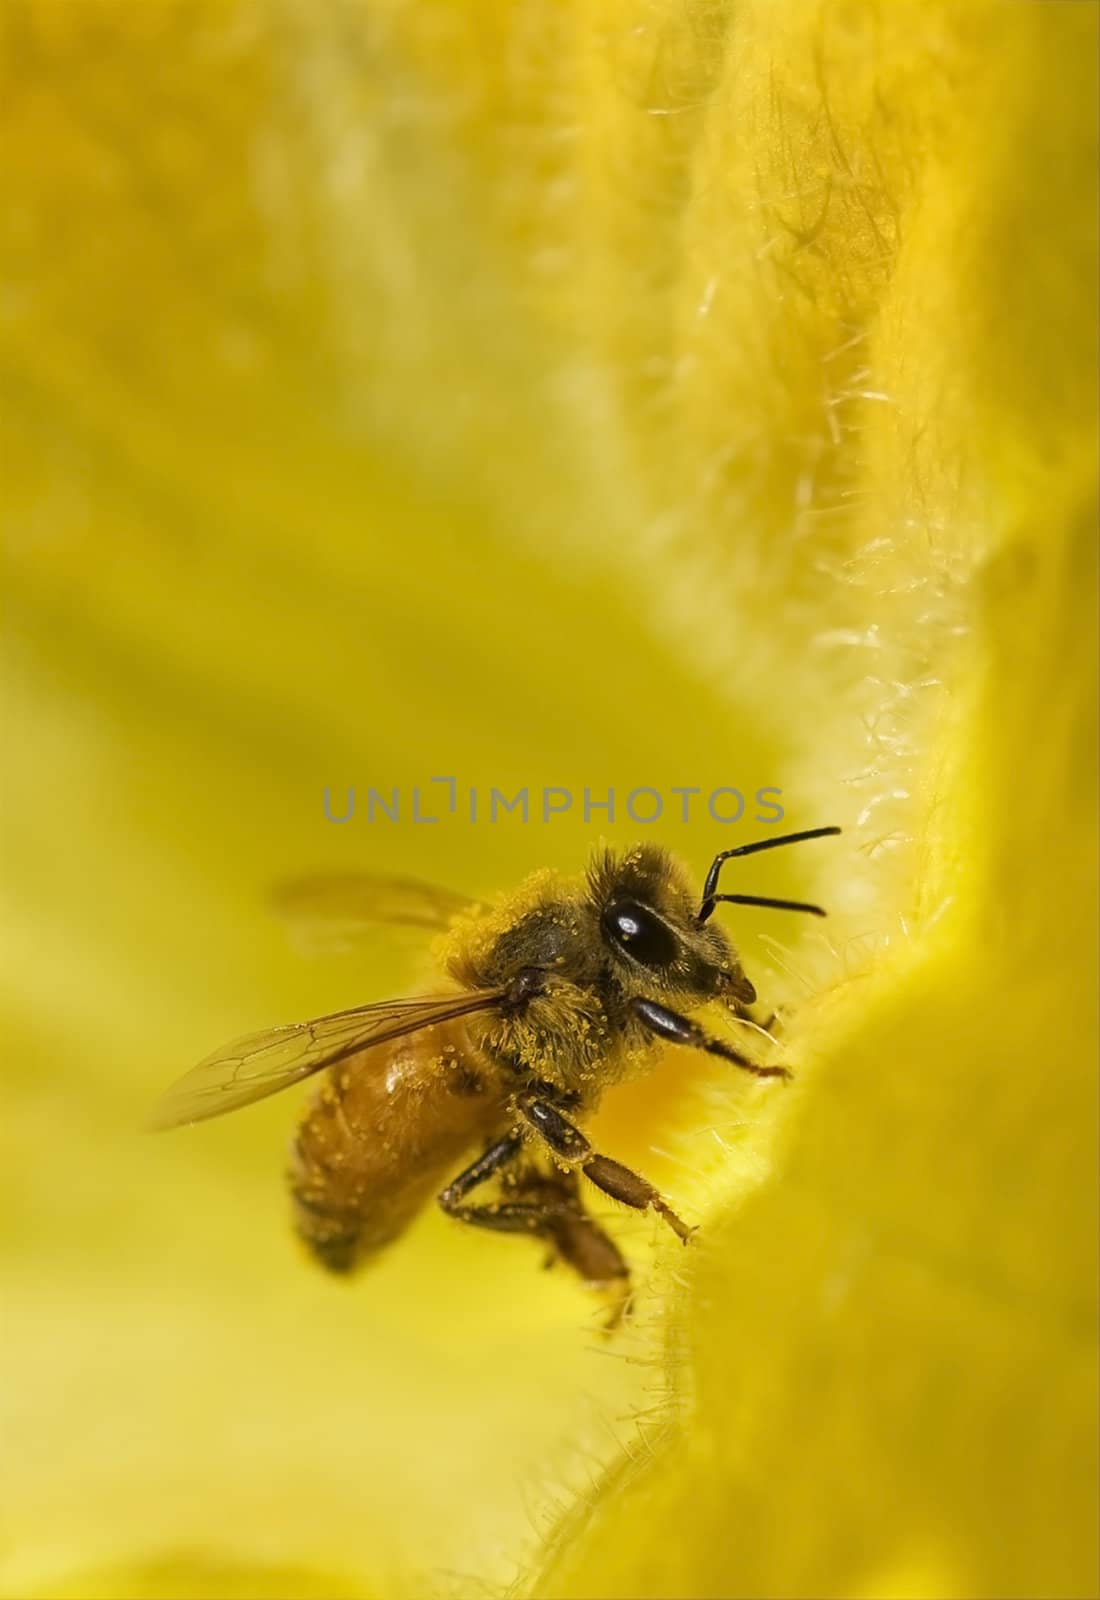 worker bee on yellow flower by sherj